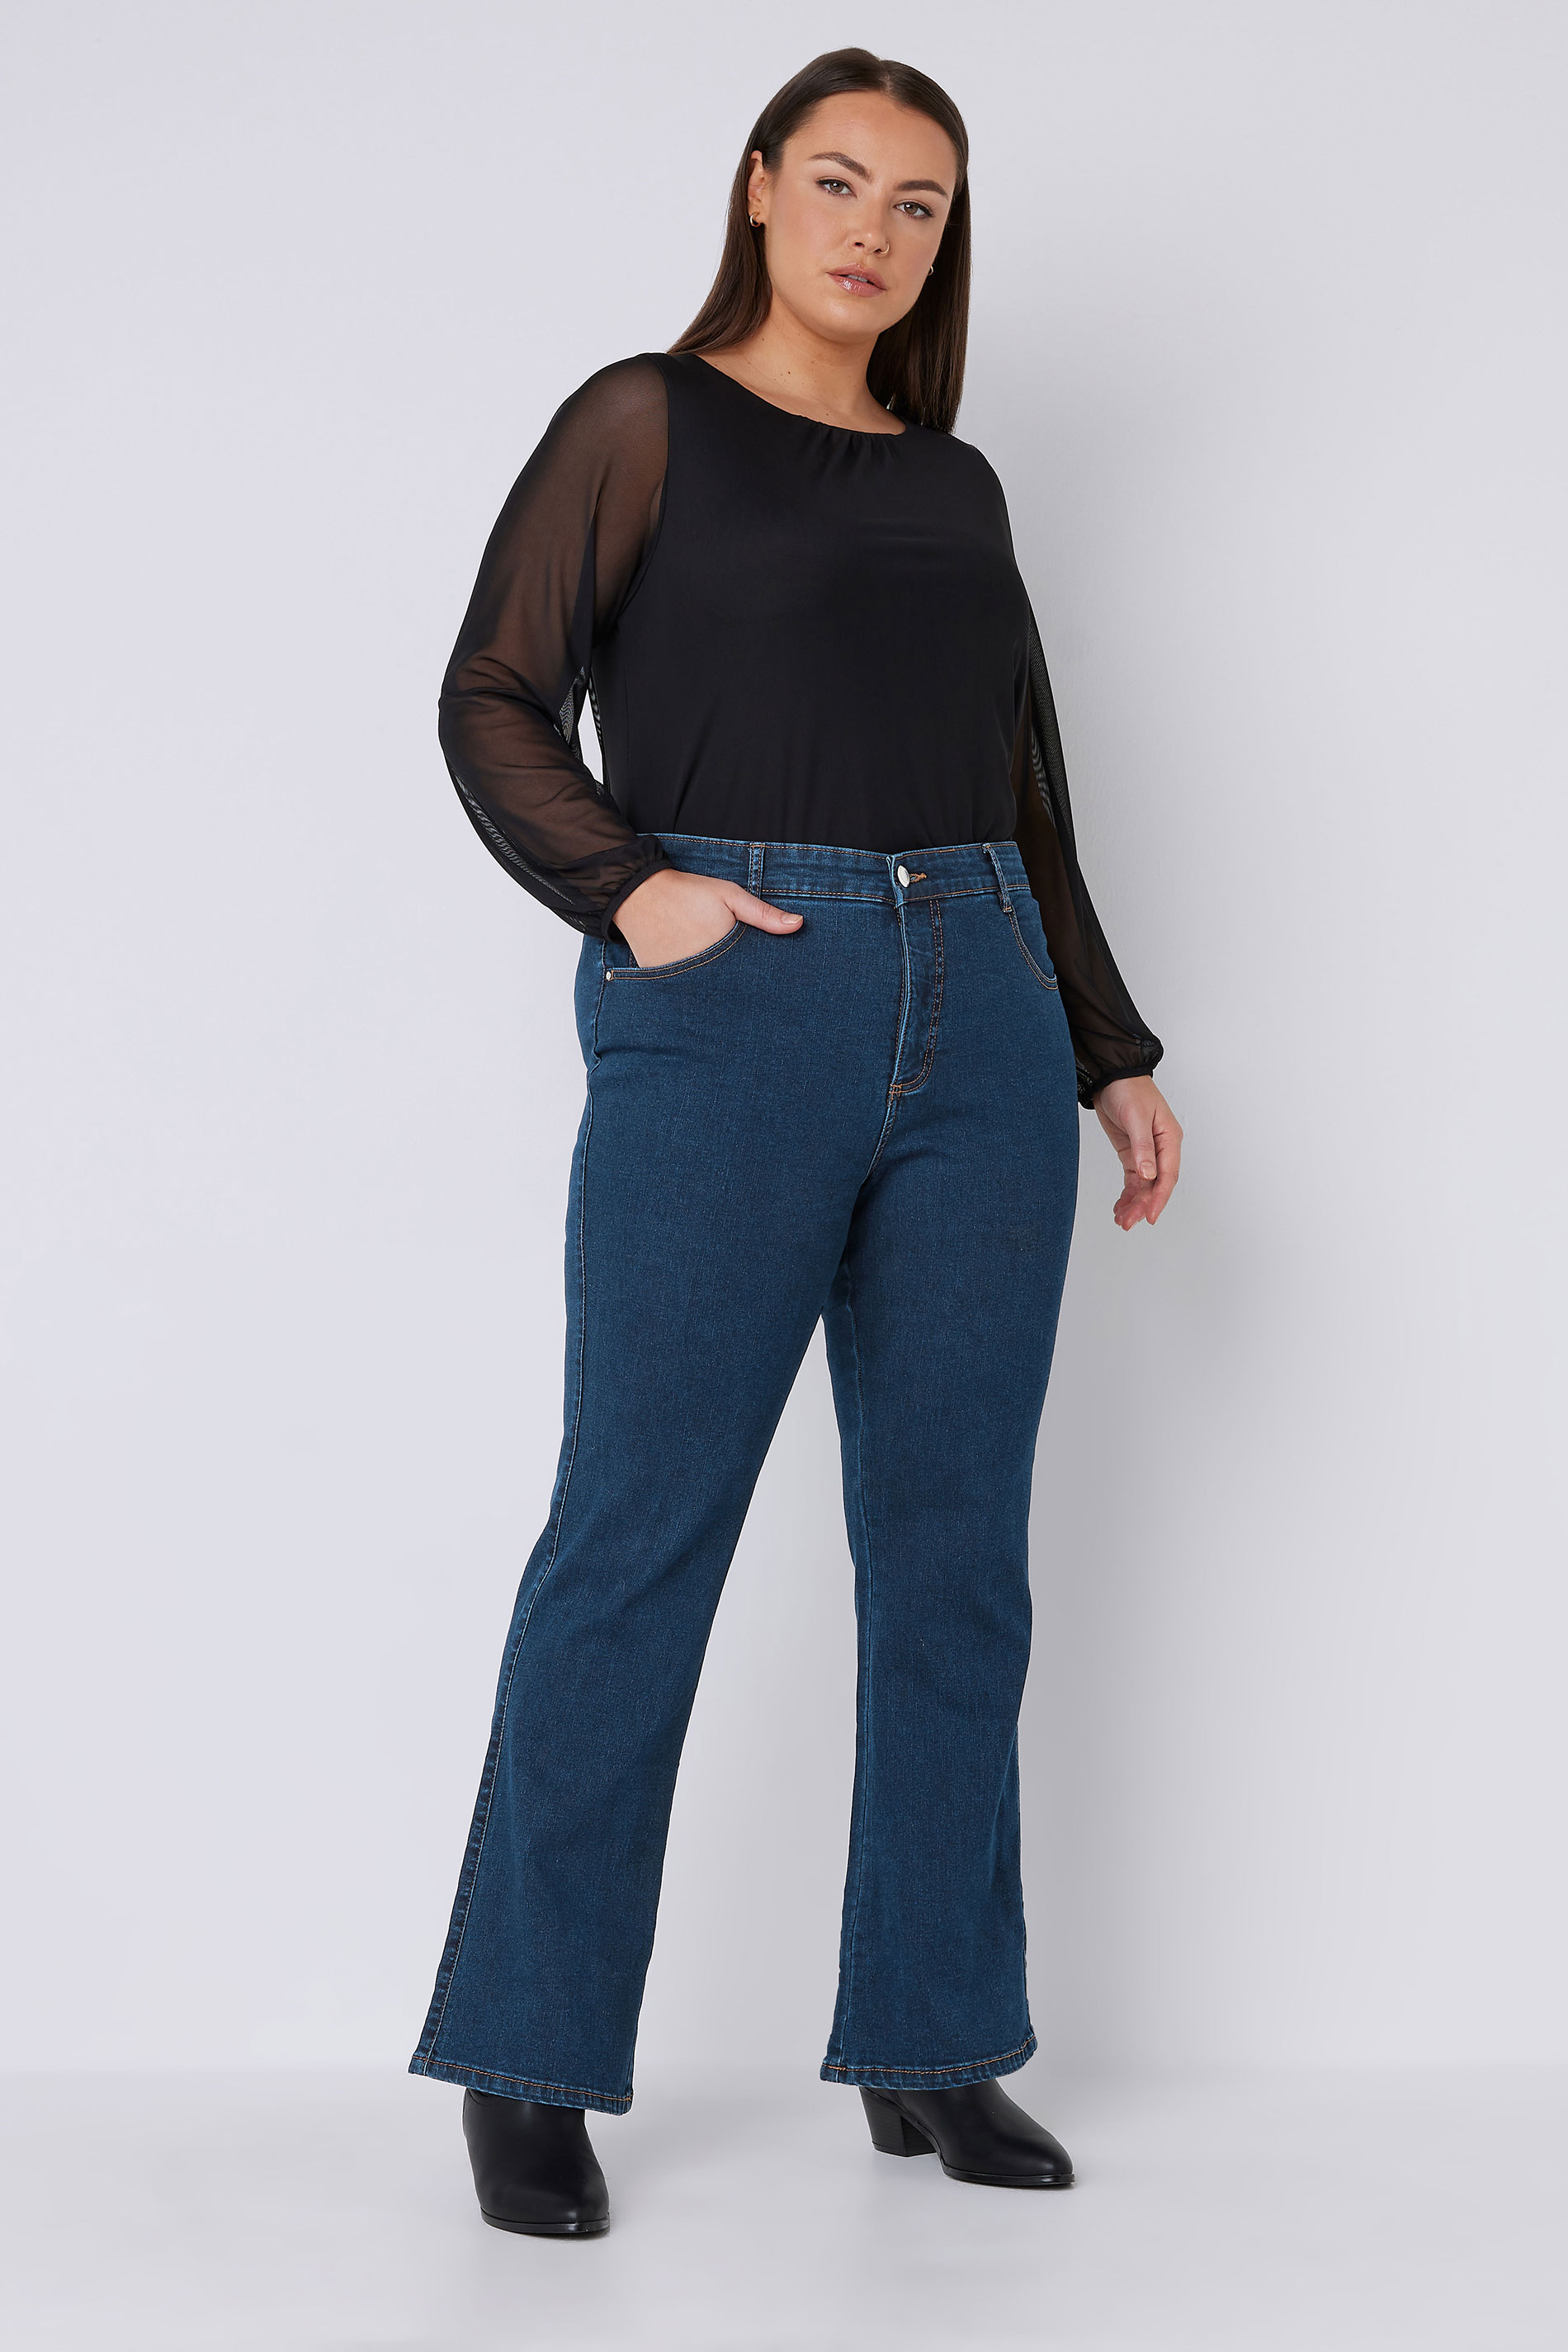 EVANS Plus Size Indigo Blue Bootcut Jeans | Evans 3